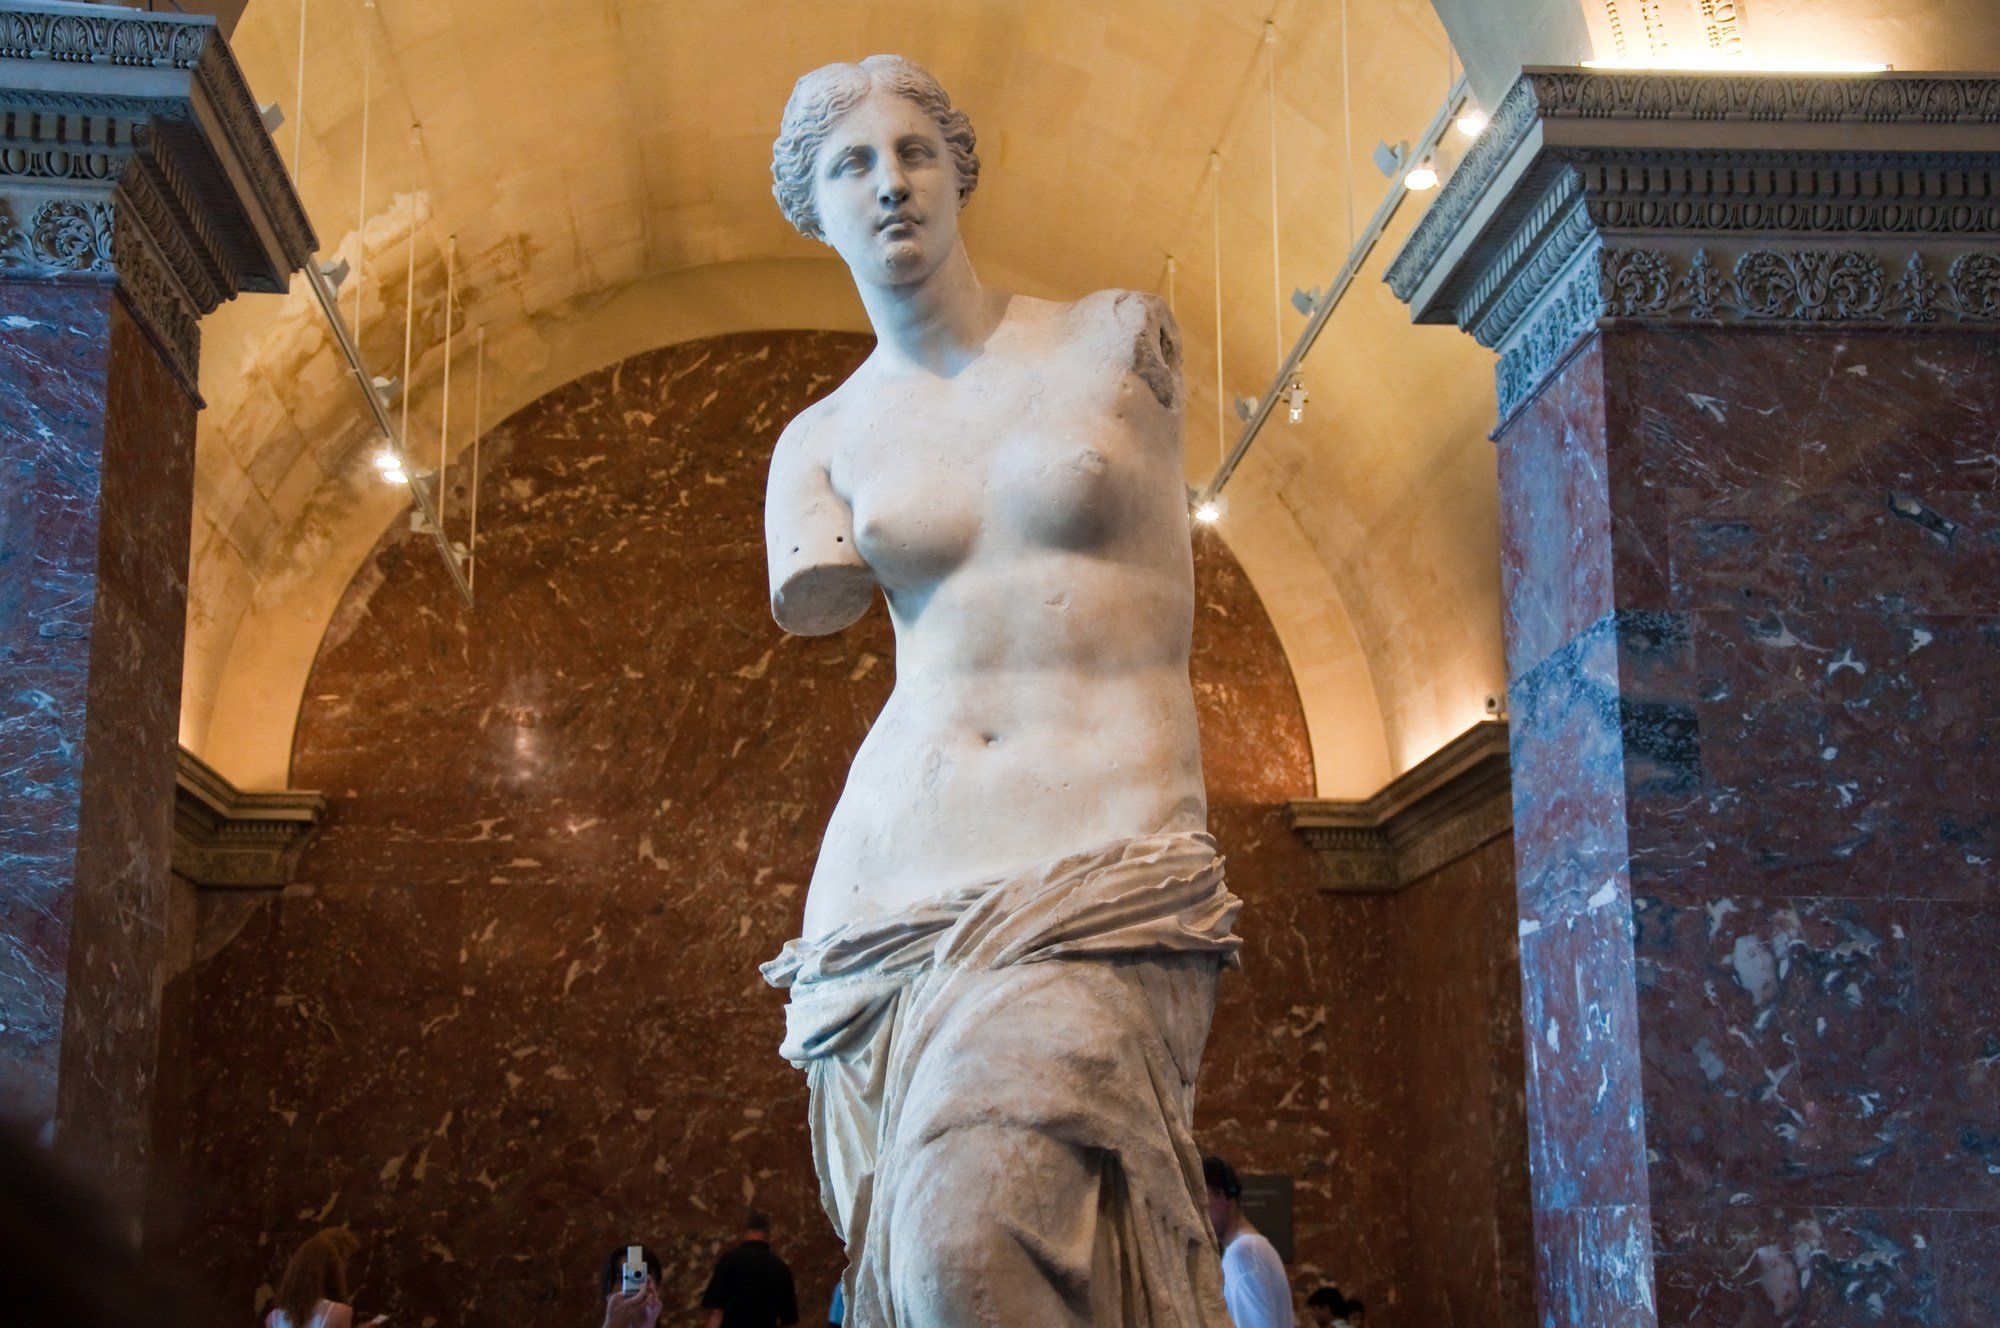 Venus de Milo, also known as Aphrodite of Milos, at the Louvre in Paris